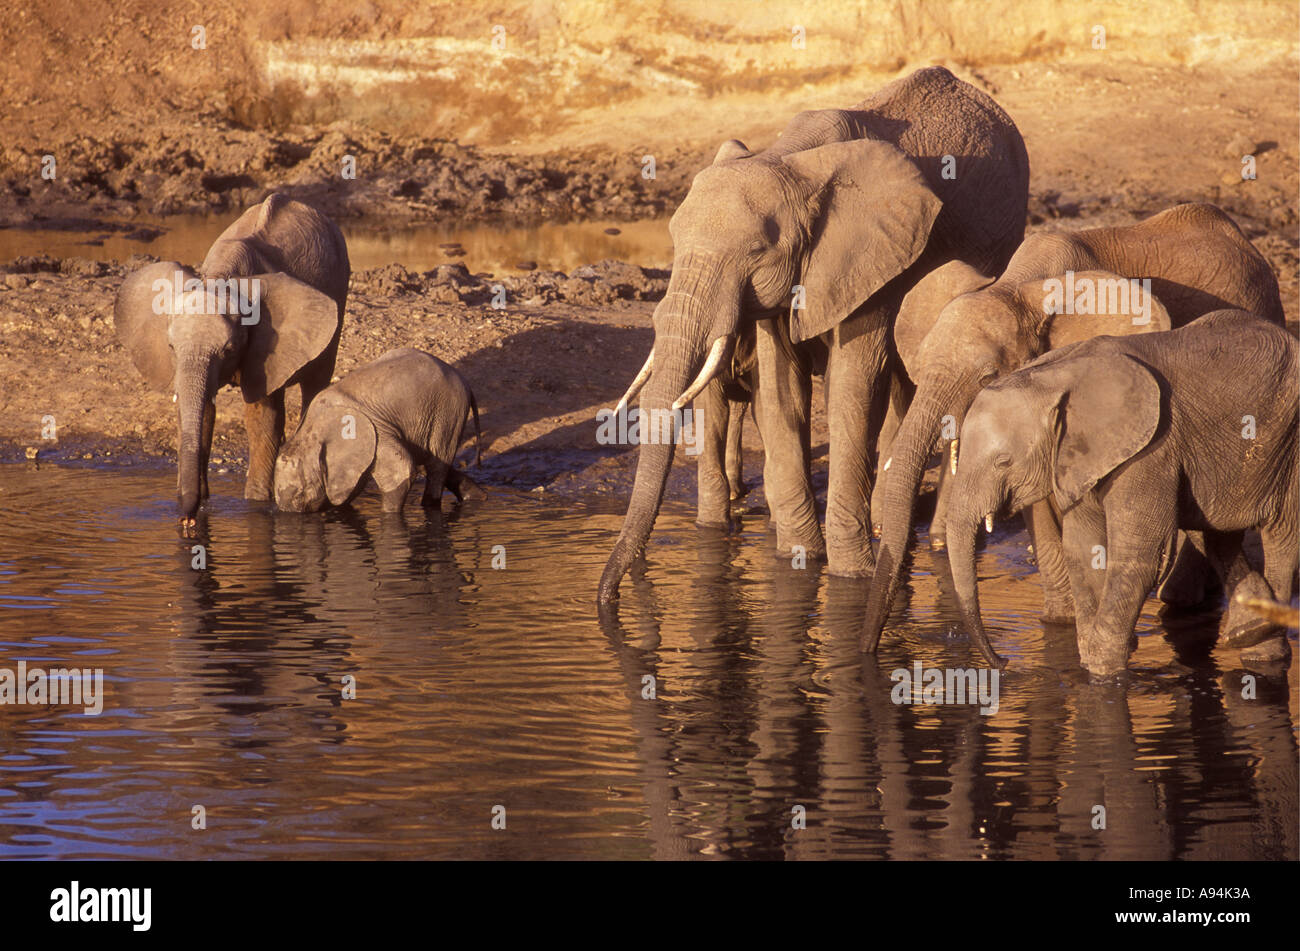 Les éléphants femelles et veaux boire la rivière Tarangire Parc national de Tarangire Tanzanie Afrique de l'Est Banque D'Images